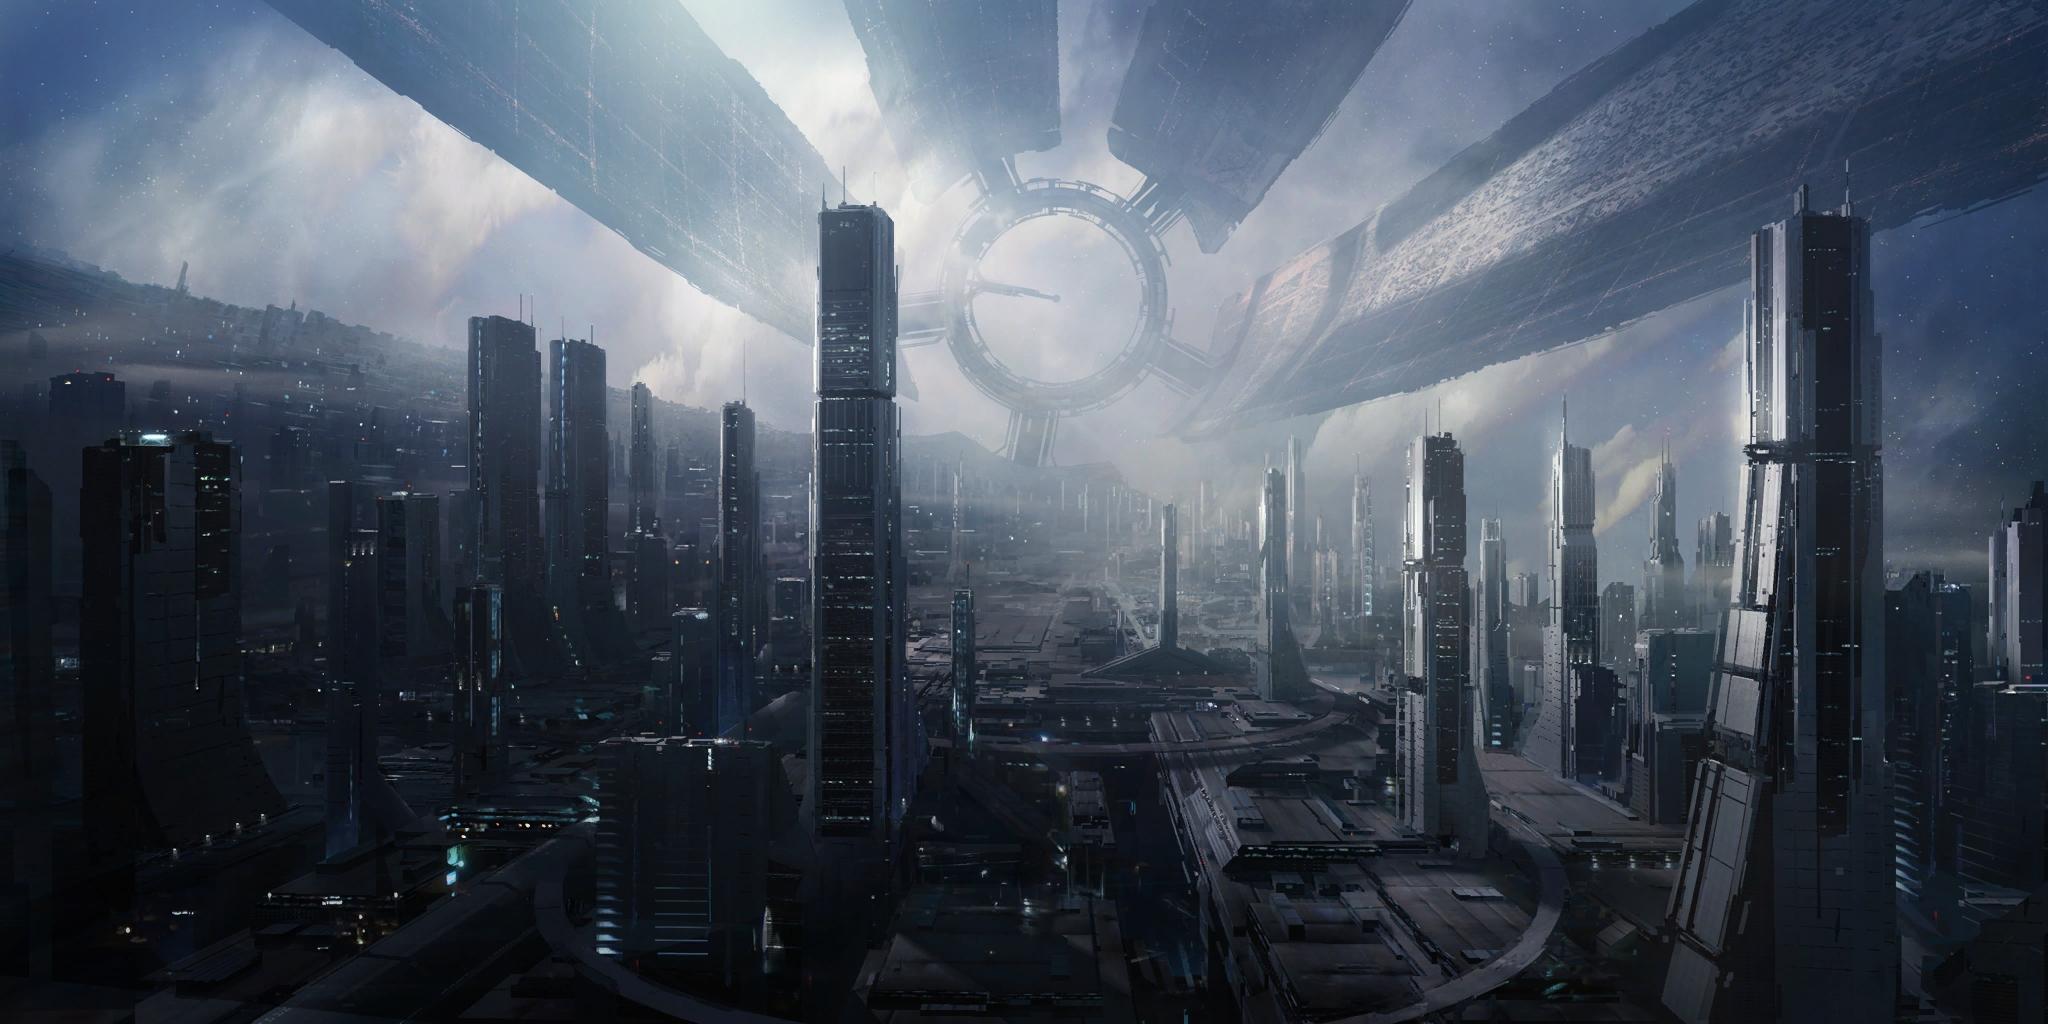 Mass Effect 3 Citadelle